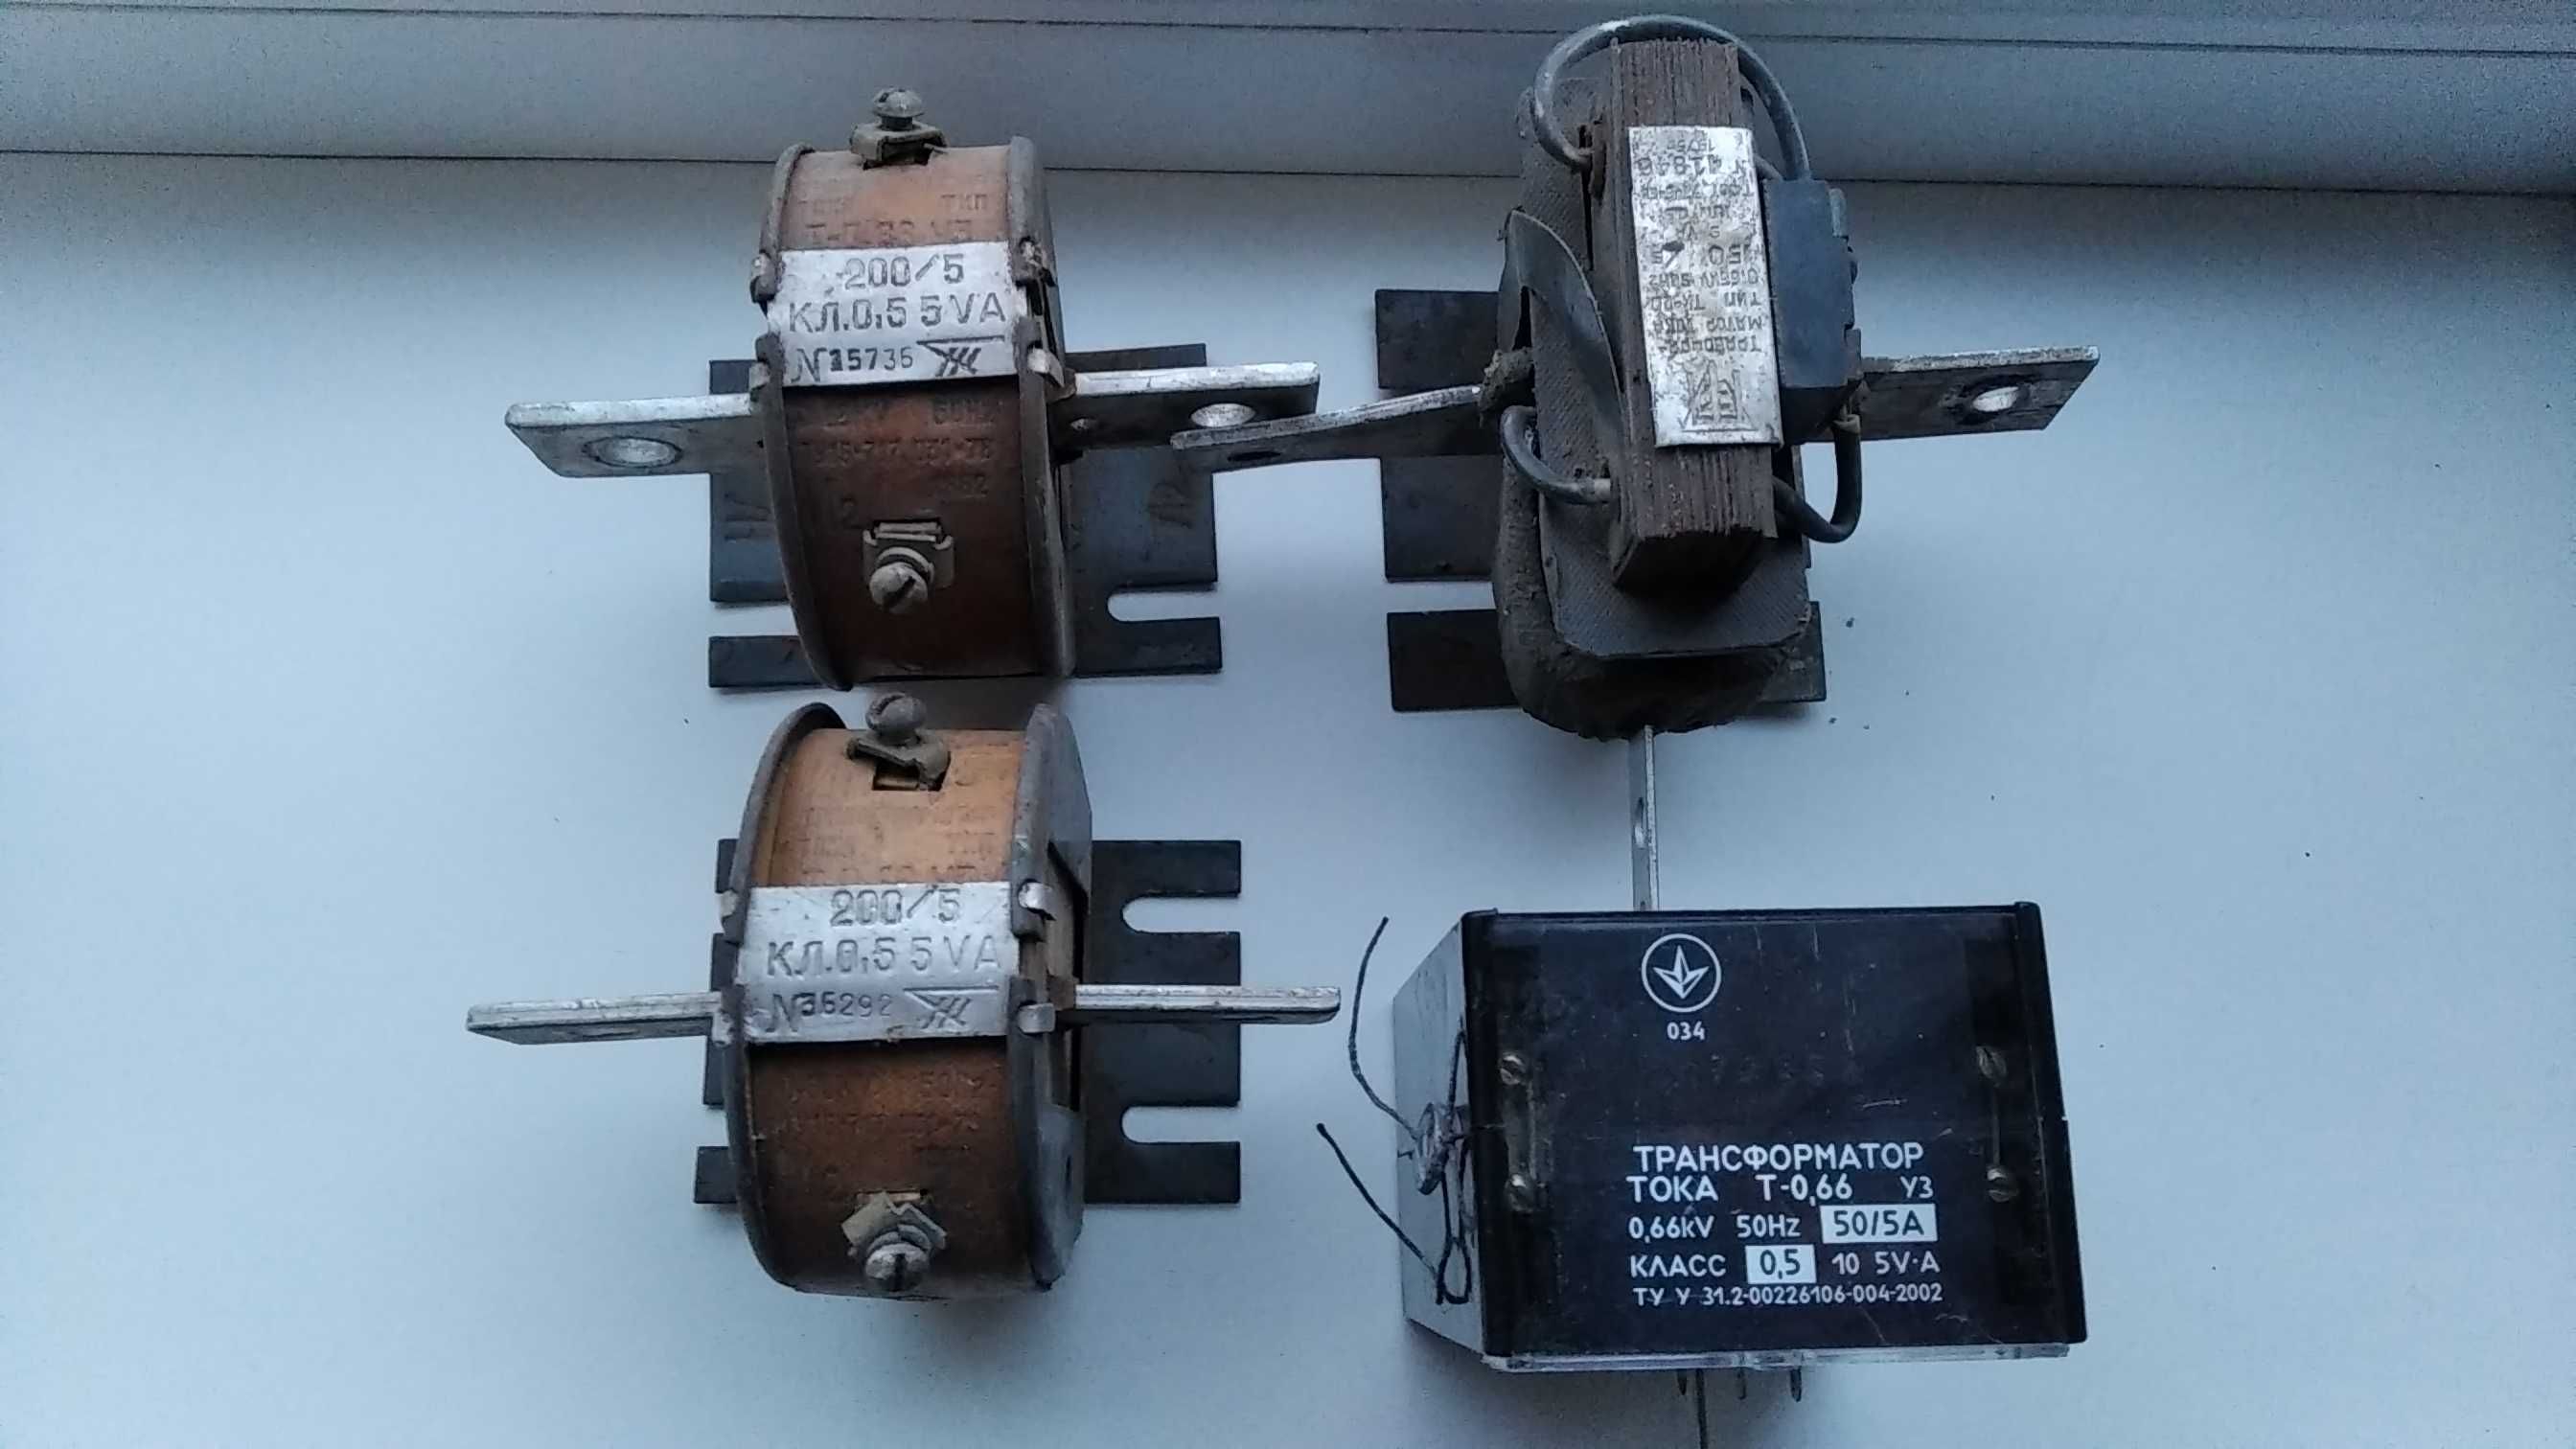 Трансформаторы тока Т-0,66 50/5А, КЛ.0,5 200/5 и ТК  150/5